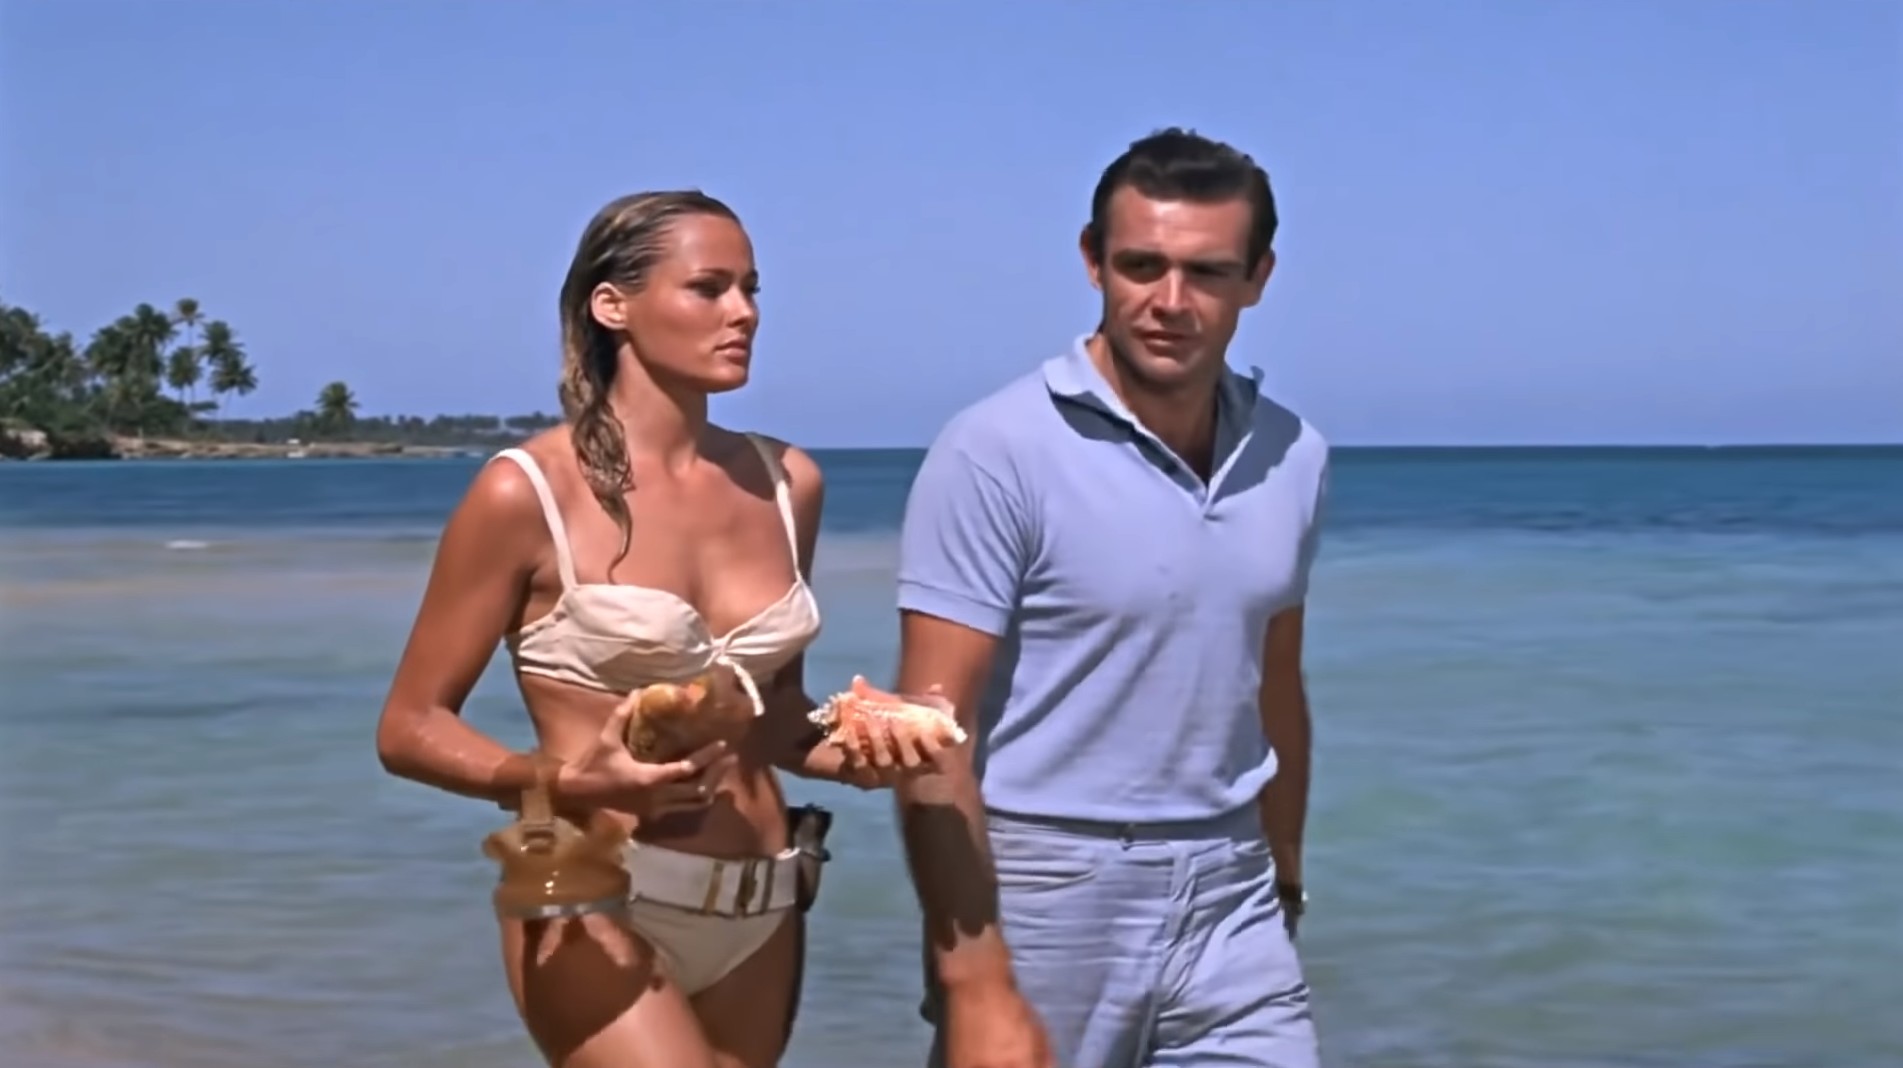 Filmový James Bond slaví 60 let. Připomeňme si 10 nezapomenutelných scén s agentem 007